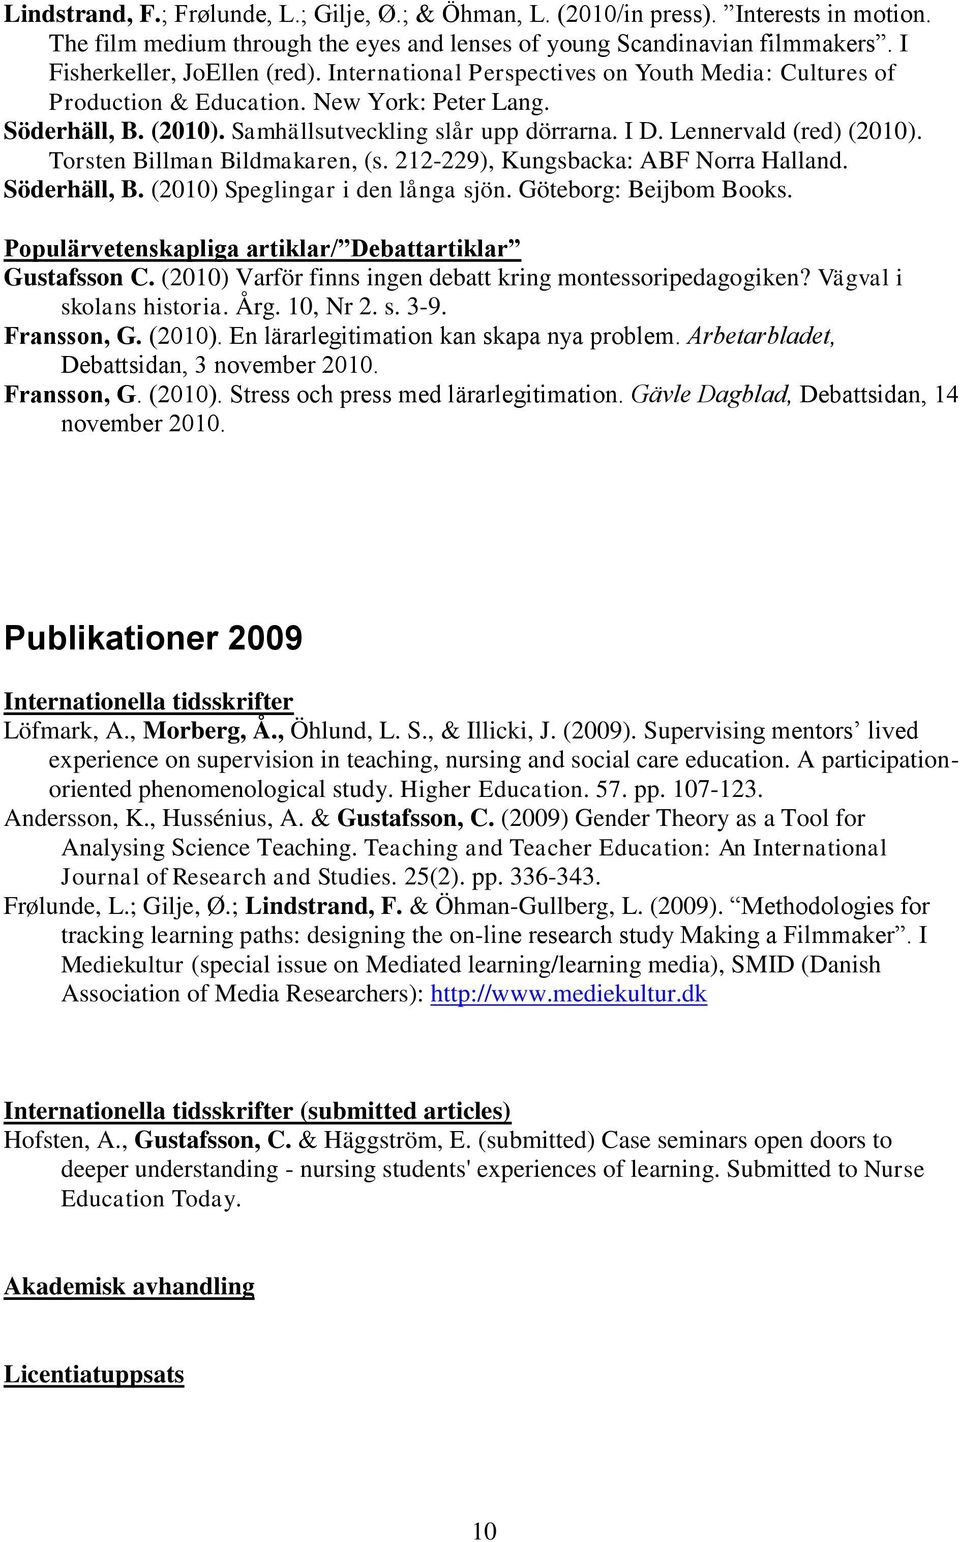 Torsten Billman Bildmakaren, (s. 212-229), Kungsbacka: ABF Norra Halland. Söderhäll, B. (2010) Speglingar i den långa sjön. Göteborg: Beijbom Books.